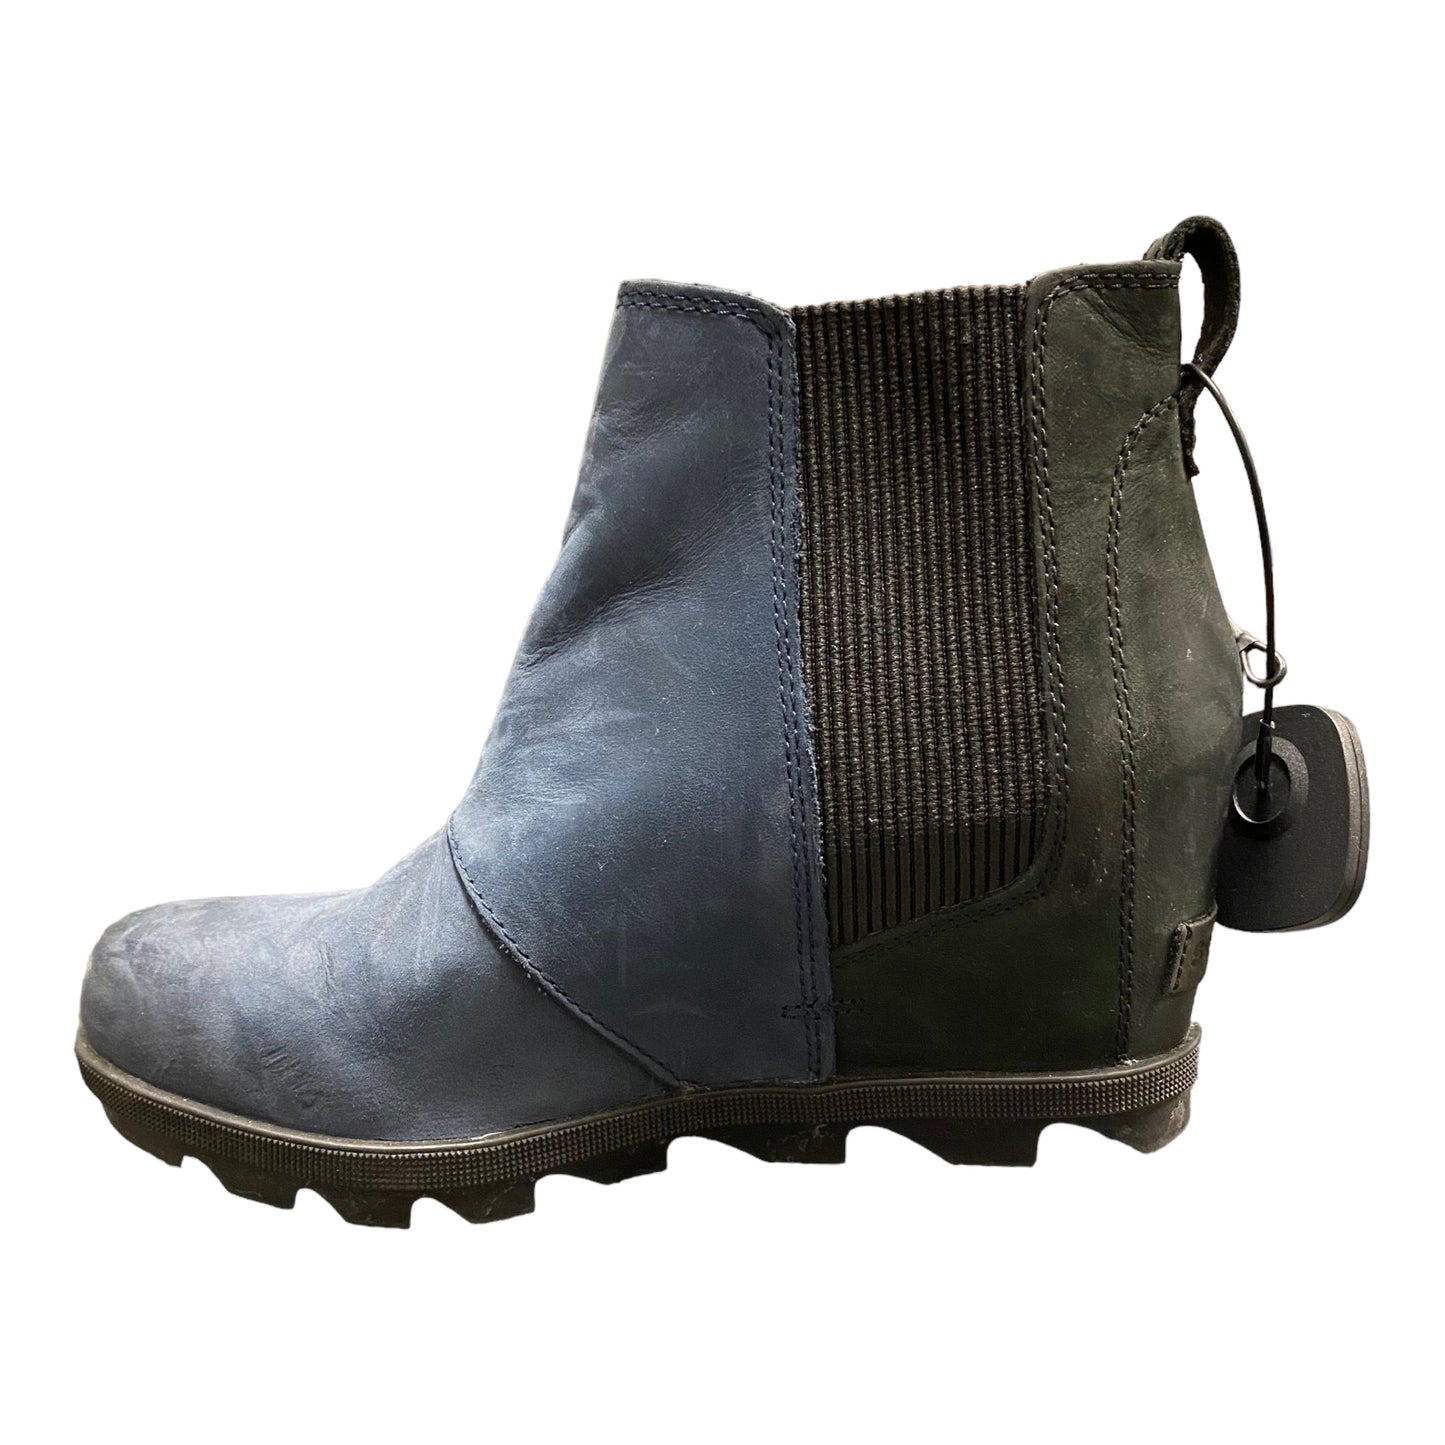 Black & Blue Boots Designer Sorel, Size 8